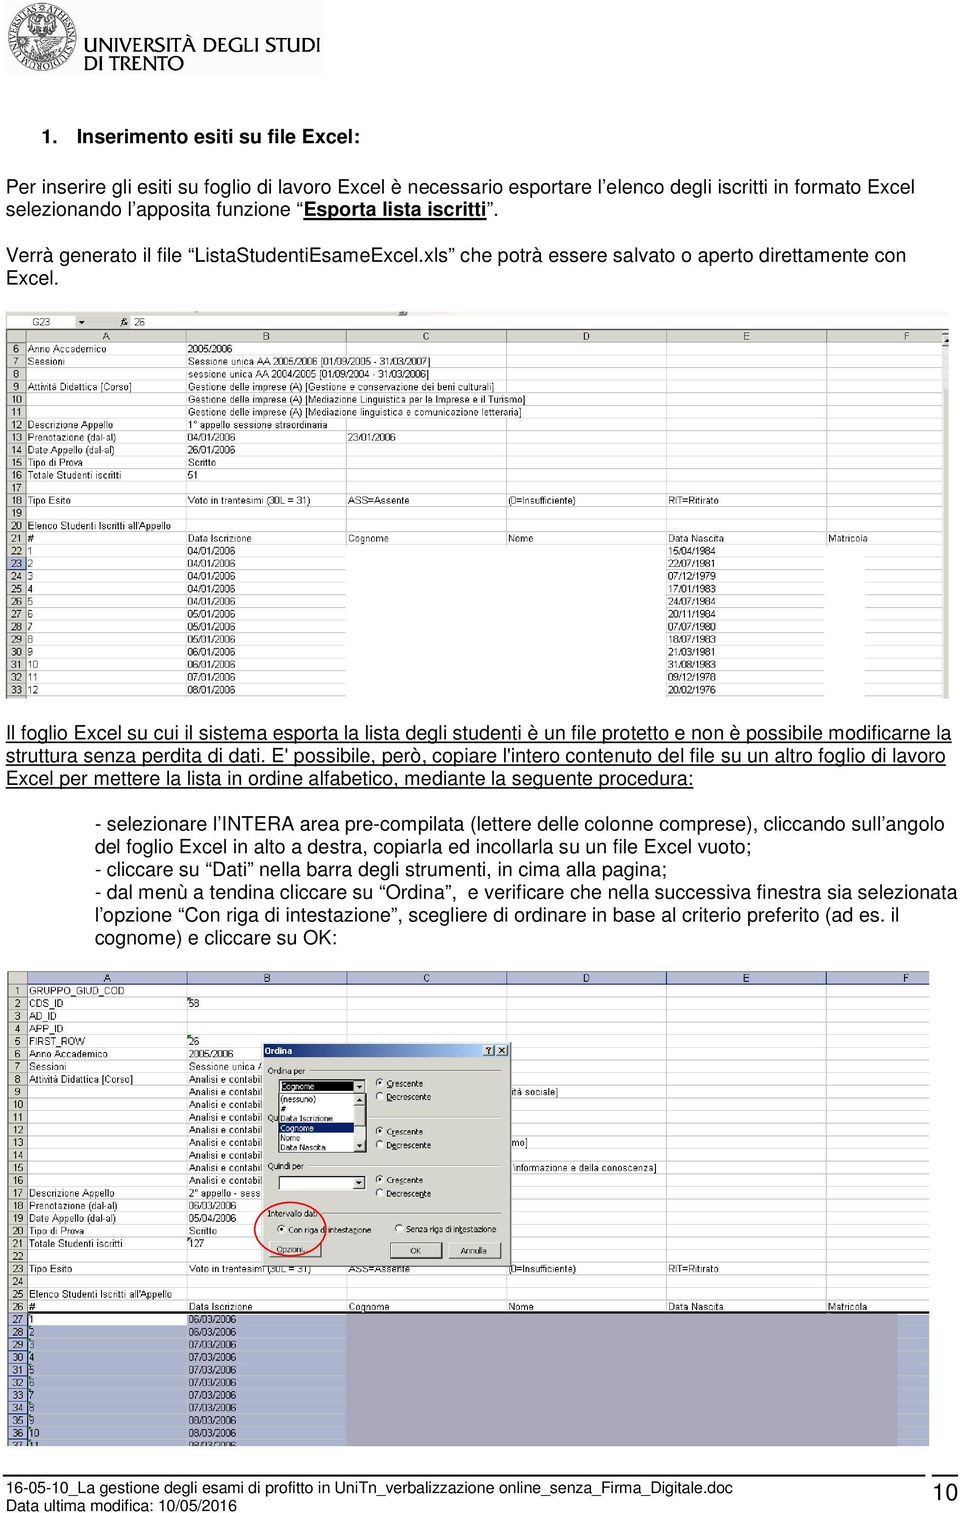 Il foglio Excel su cui il sistema esporta la lista degli studenti è un file protetto e non è possibile modificarne la struttura senza perdita di dati.